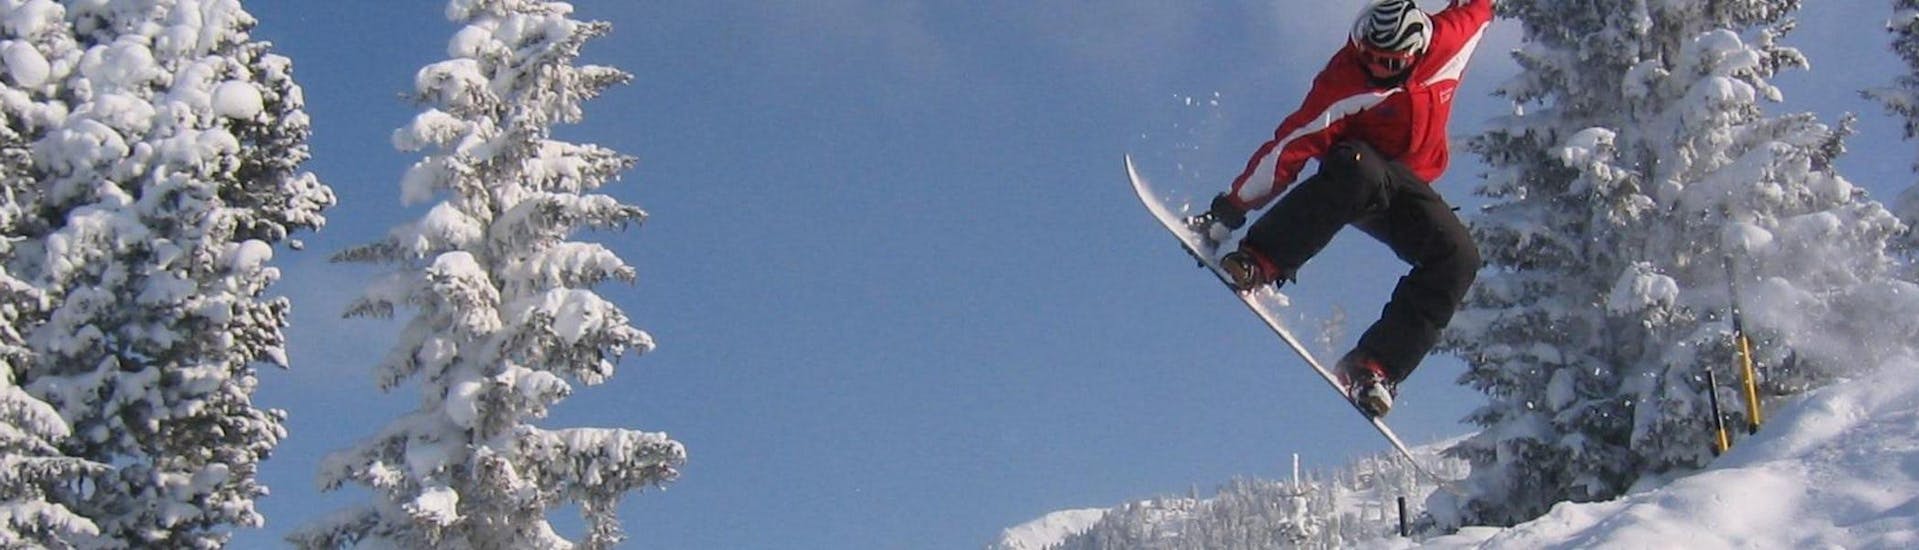 Lezioni di Snowboard a partire da 15 anni principianti assoluti.